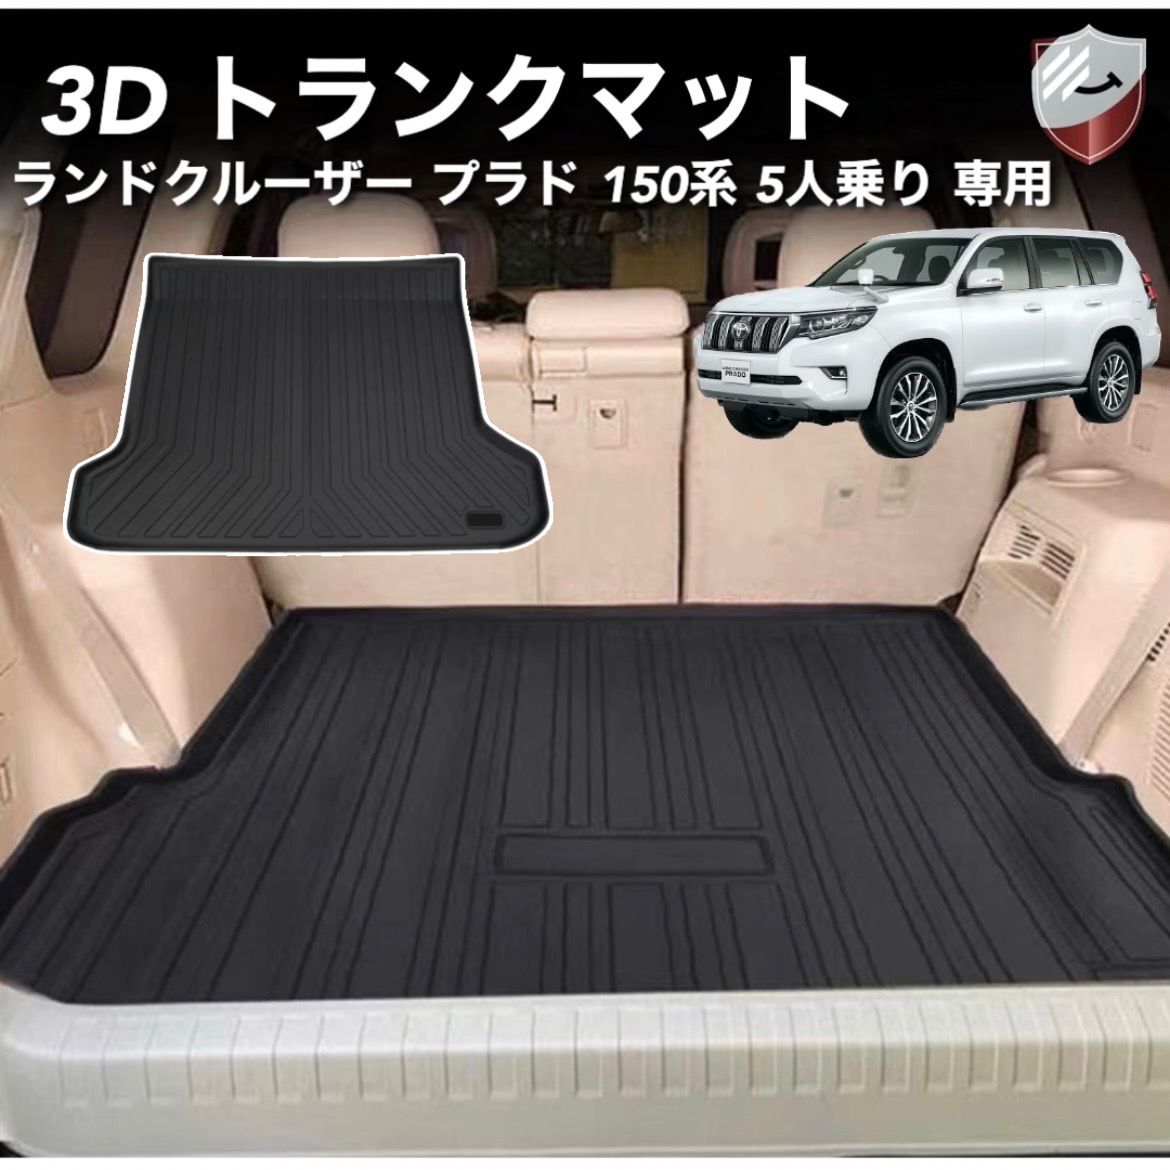 トヨタ ランドクルーザー プラド 150系 5人乗り に適用 3Dトランク